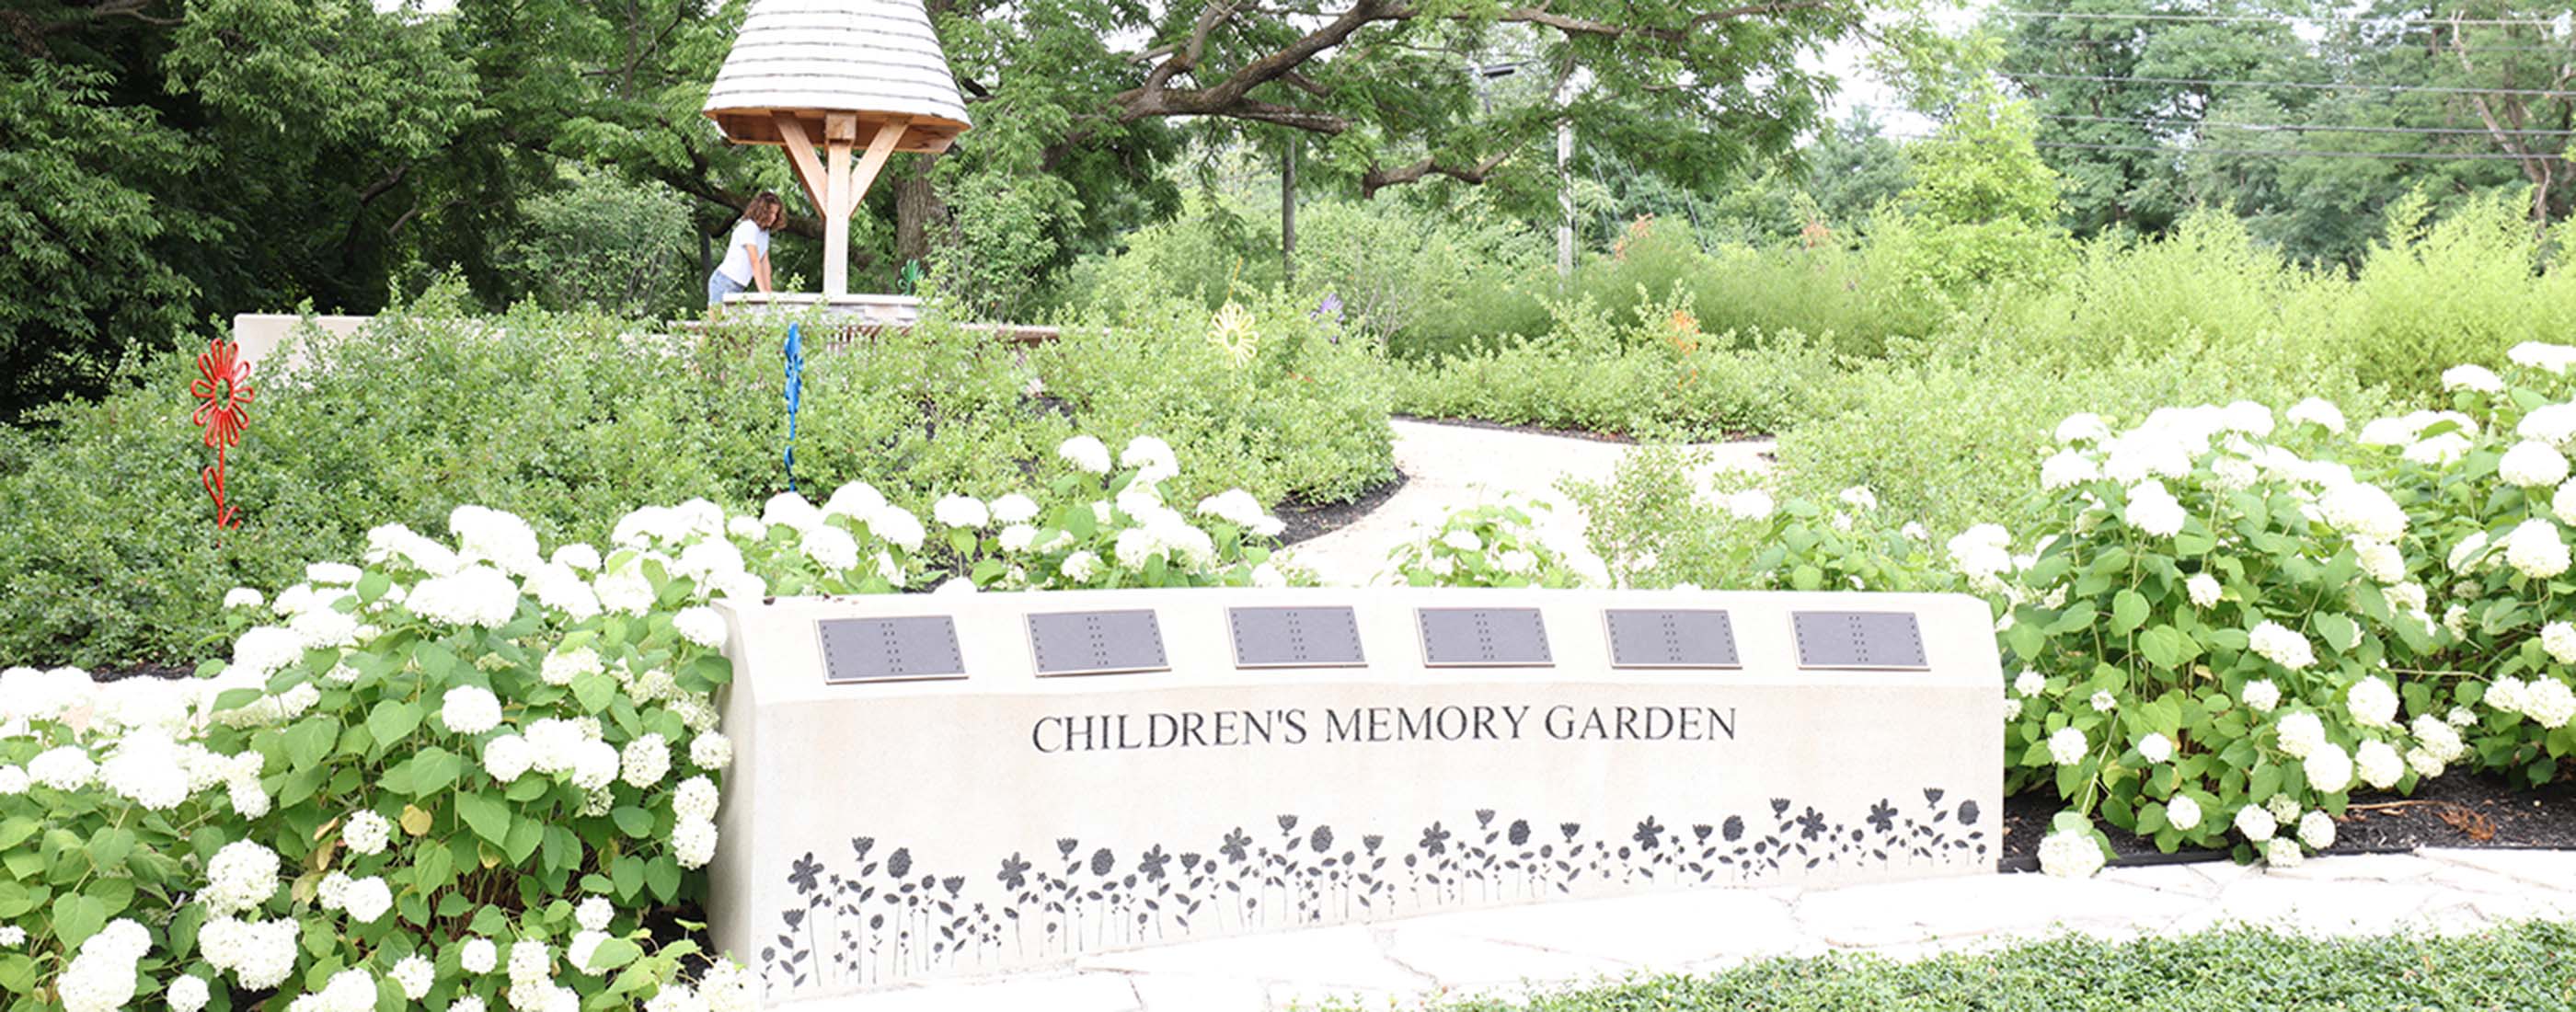 Wesley Chapel built Children's Memorial Garden